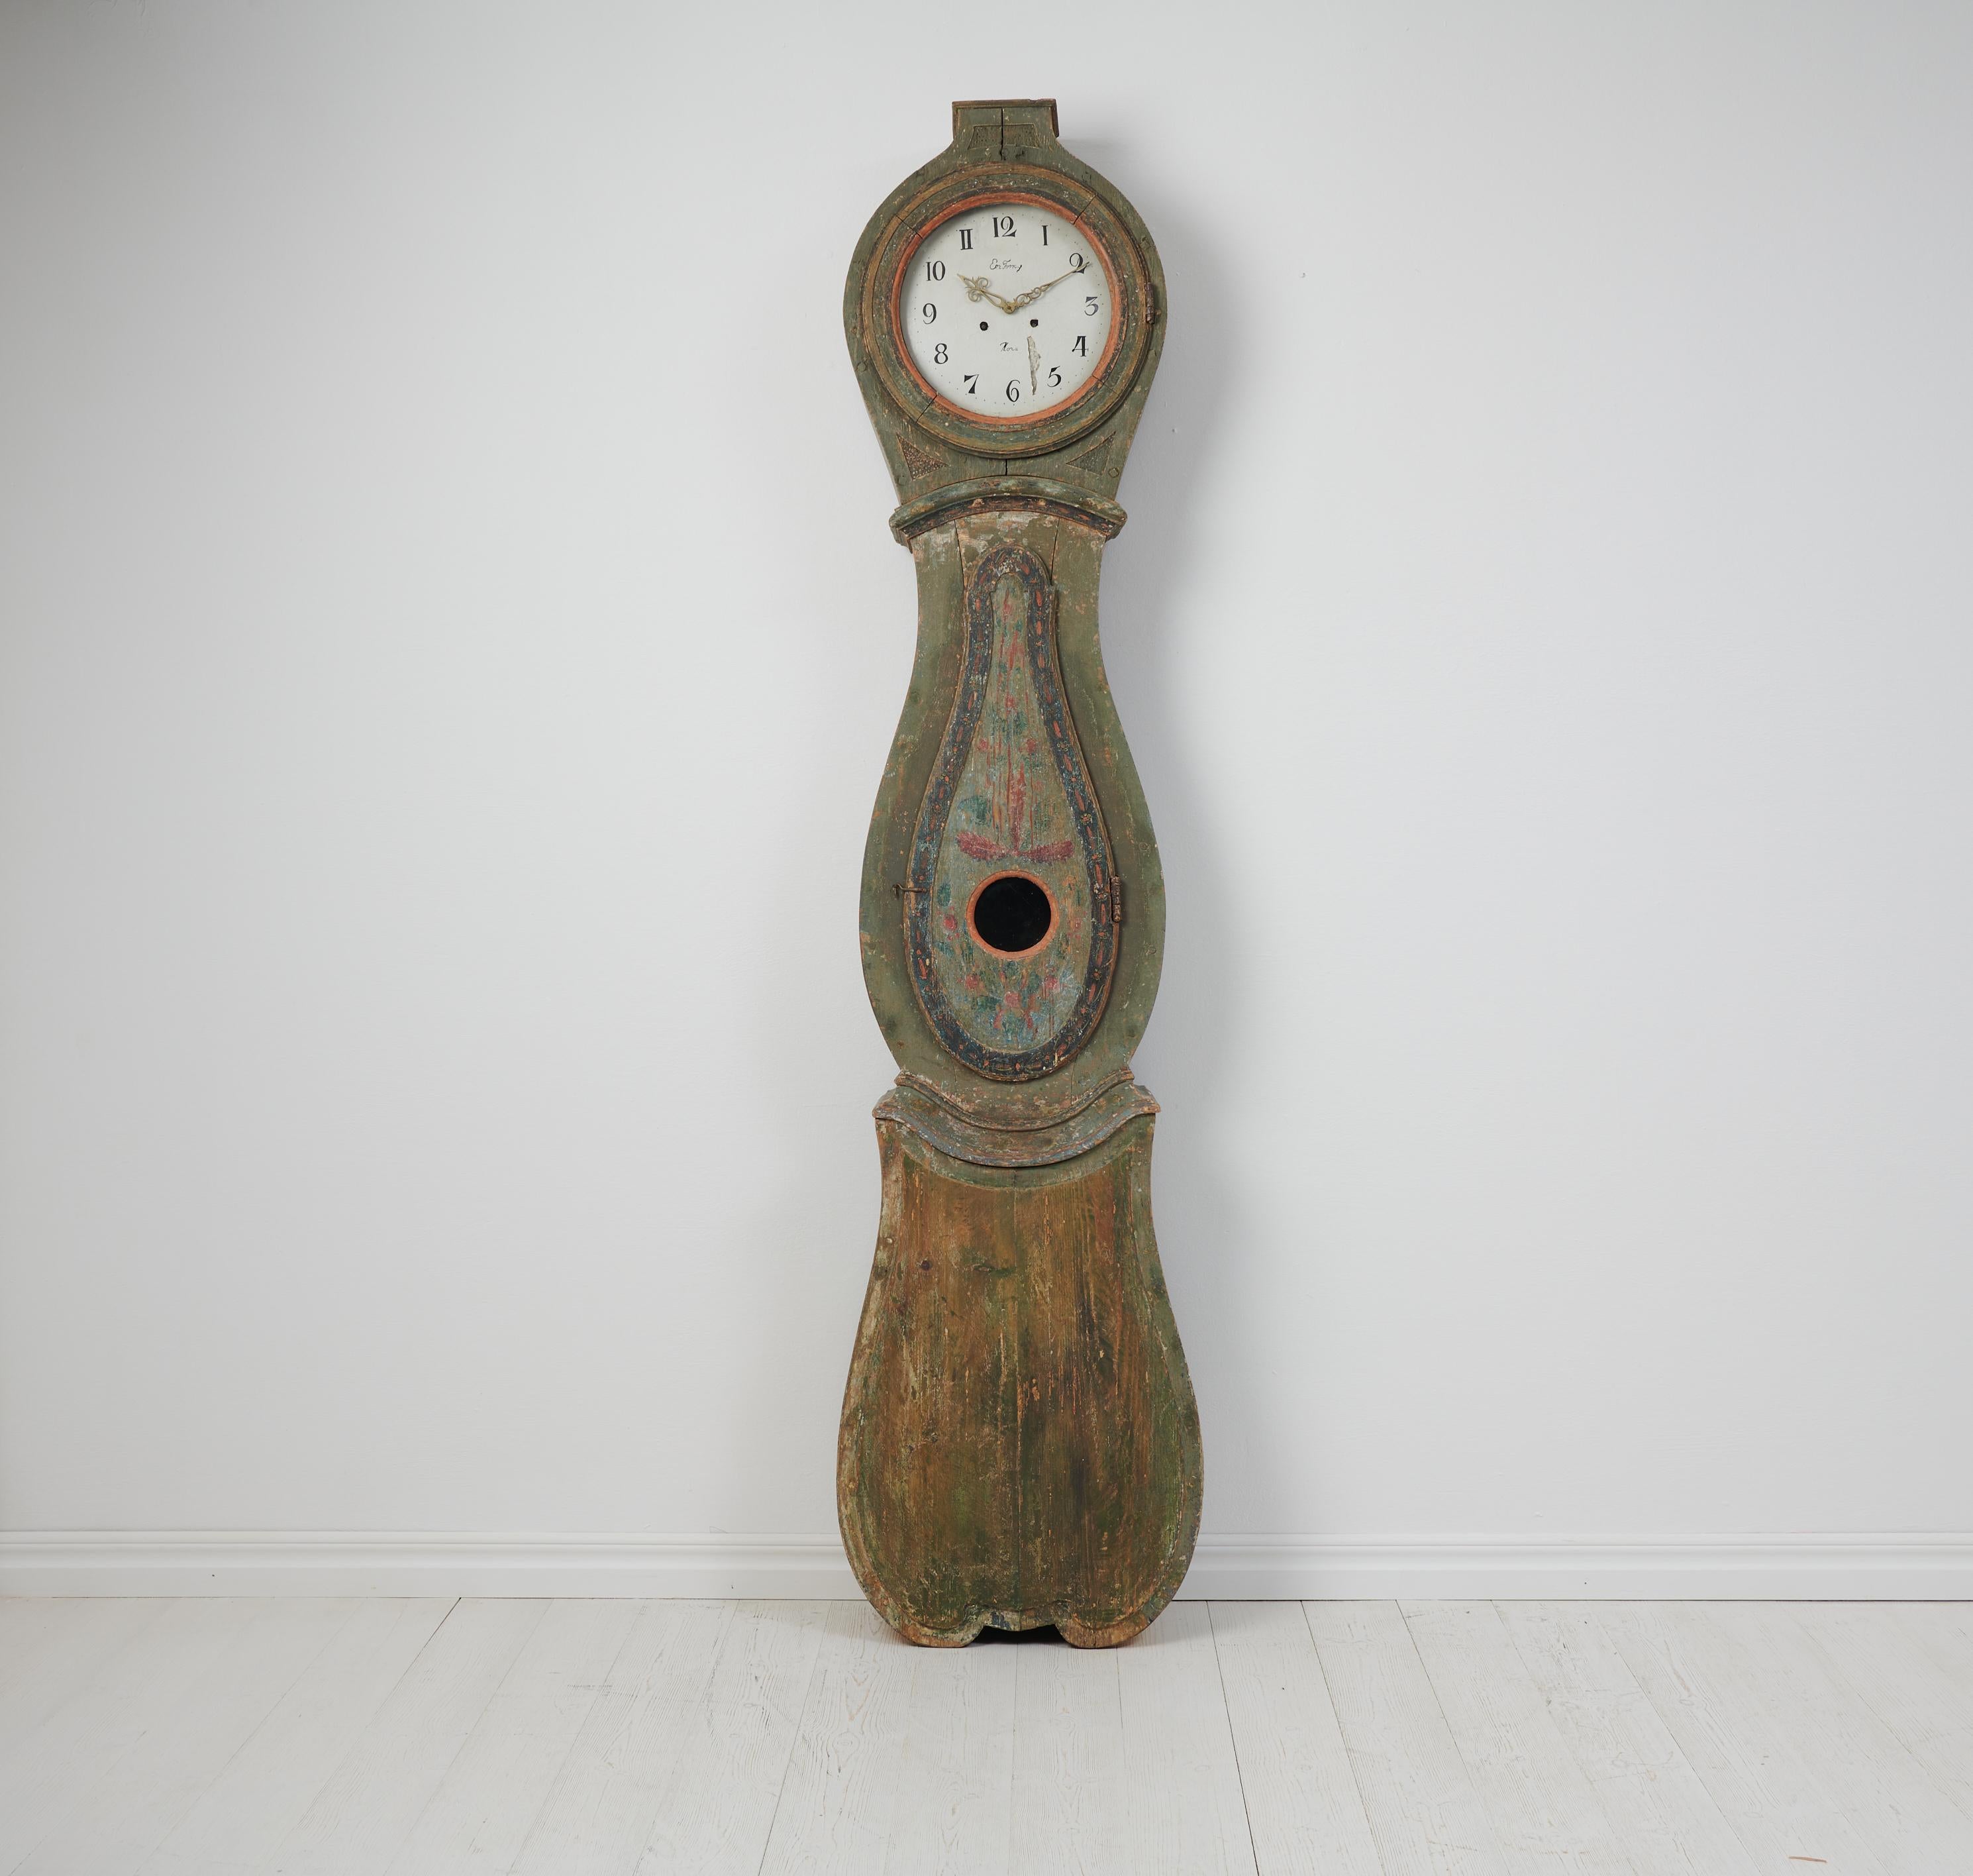 Horloge de campagne à long boîtier fabriquée en Suède au cours du 19e siècle, entre 1820 et 1840. L'horloge est un ancien meuble de campagne du nord de la Suède, fabriqué en pin suédois massif. L'horloge possède un boîtier authentique de forme